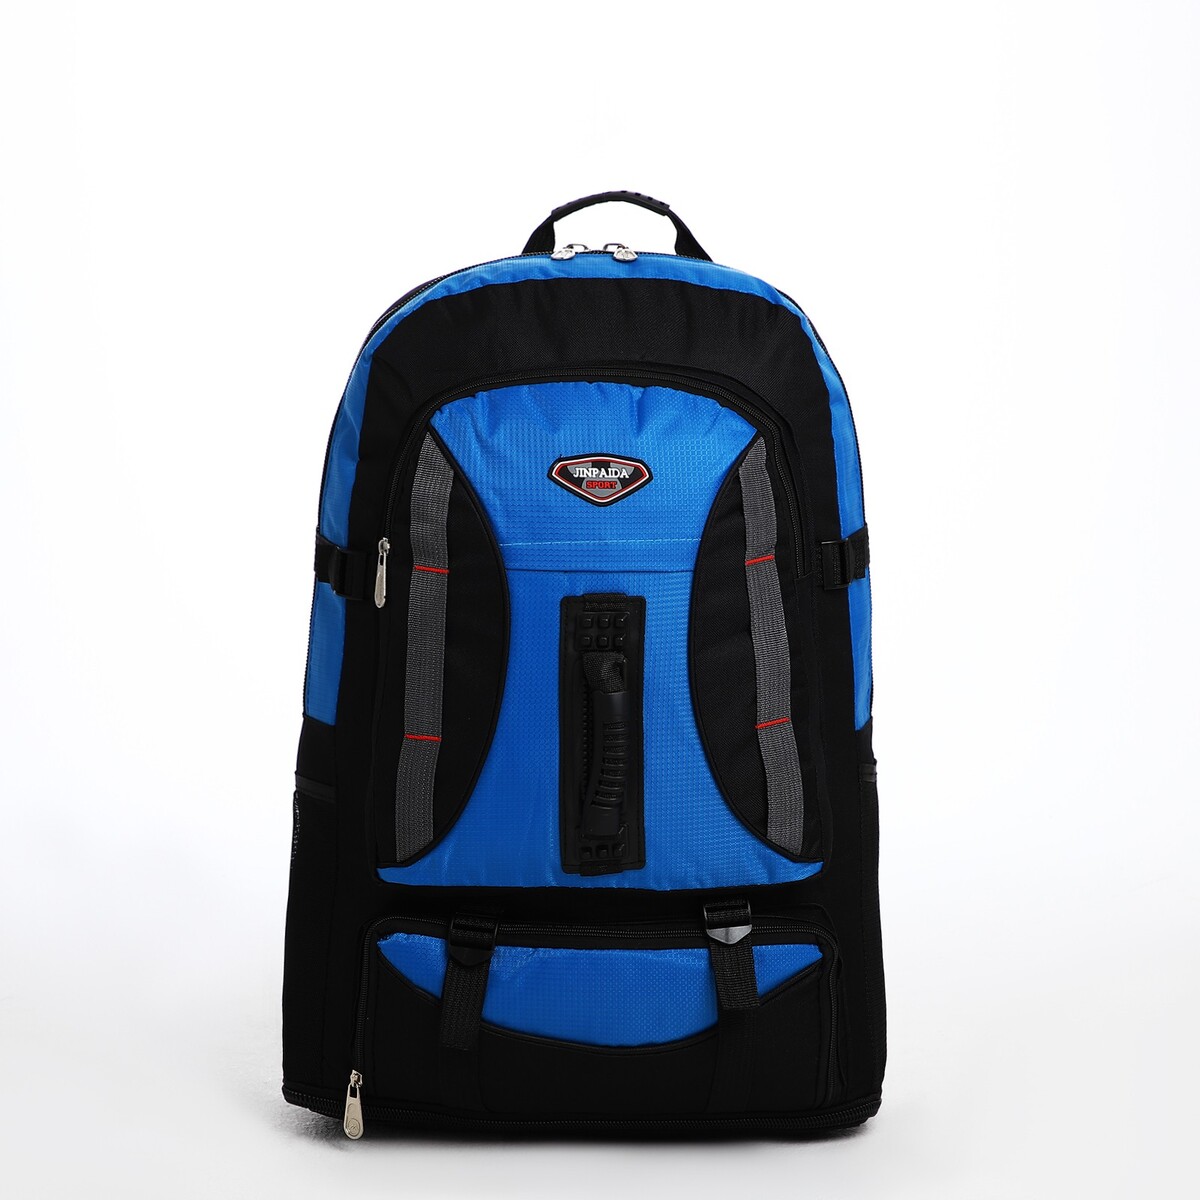 Рюкзак туристический на молнии, 4 наружных кармана, цвет синий/черный